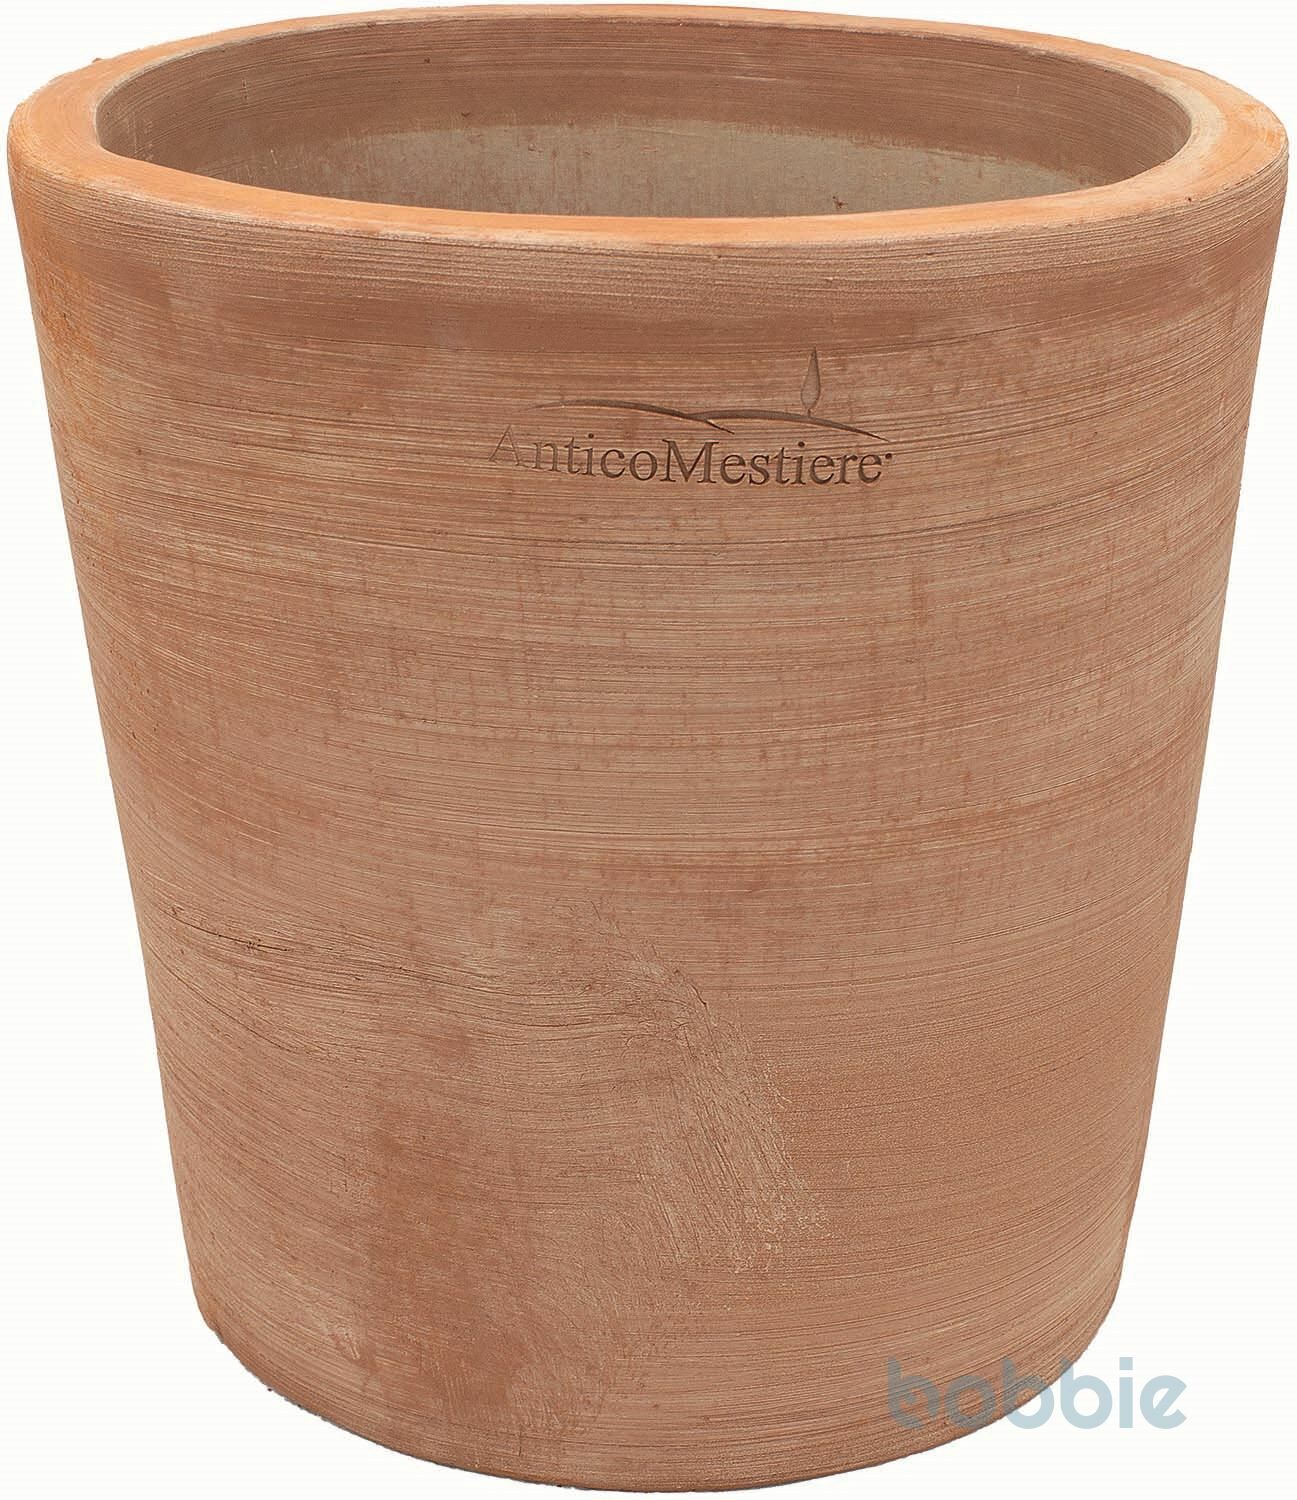 Blumentopf runde Vase modern - VASO ROTONDO MODERNE